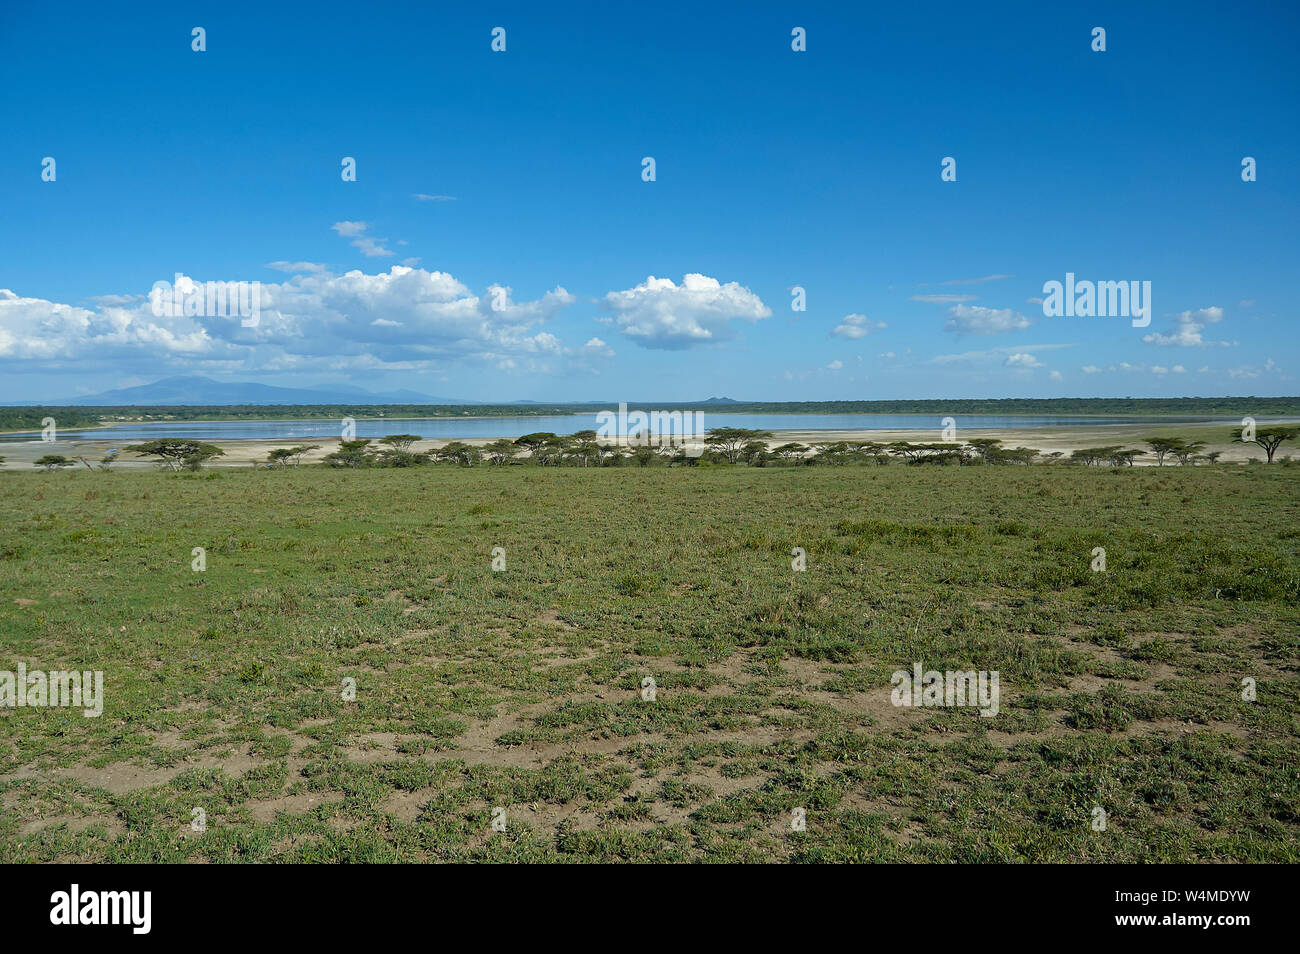 Landscape view of Lake Ndutu, Norther Tanzania Stock Photo